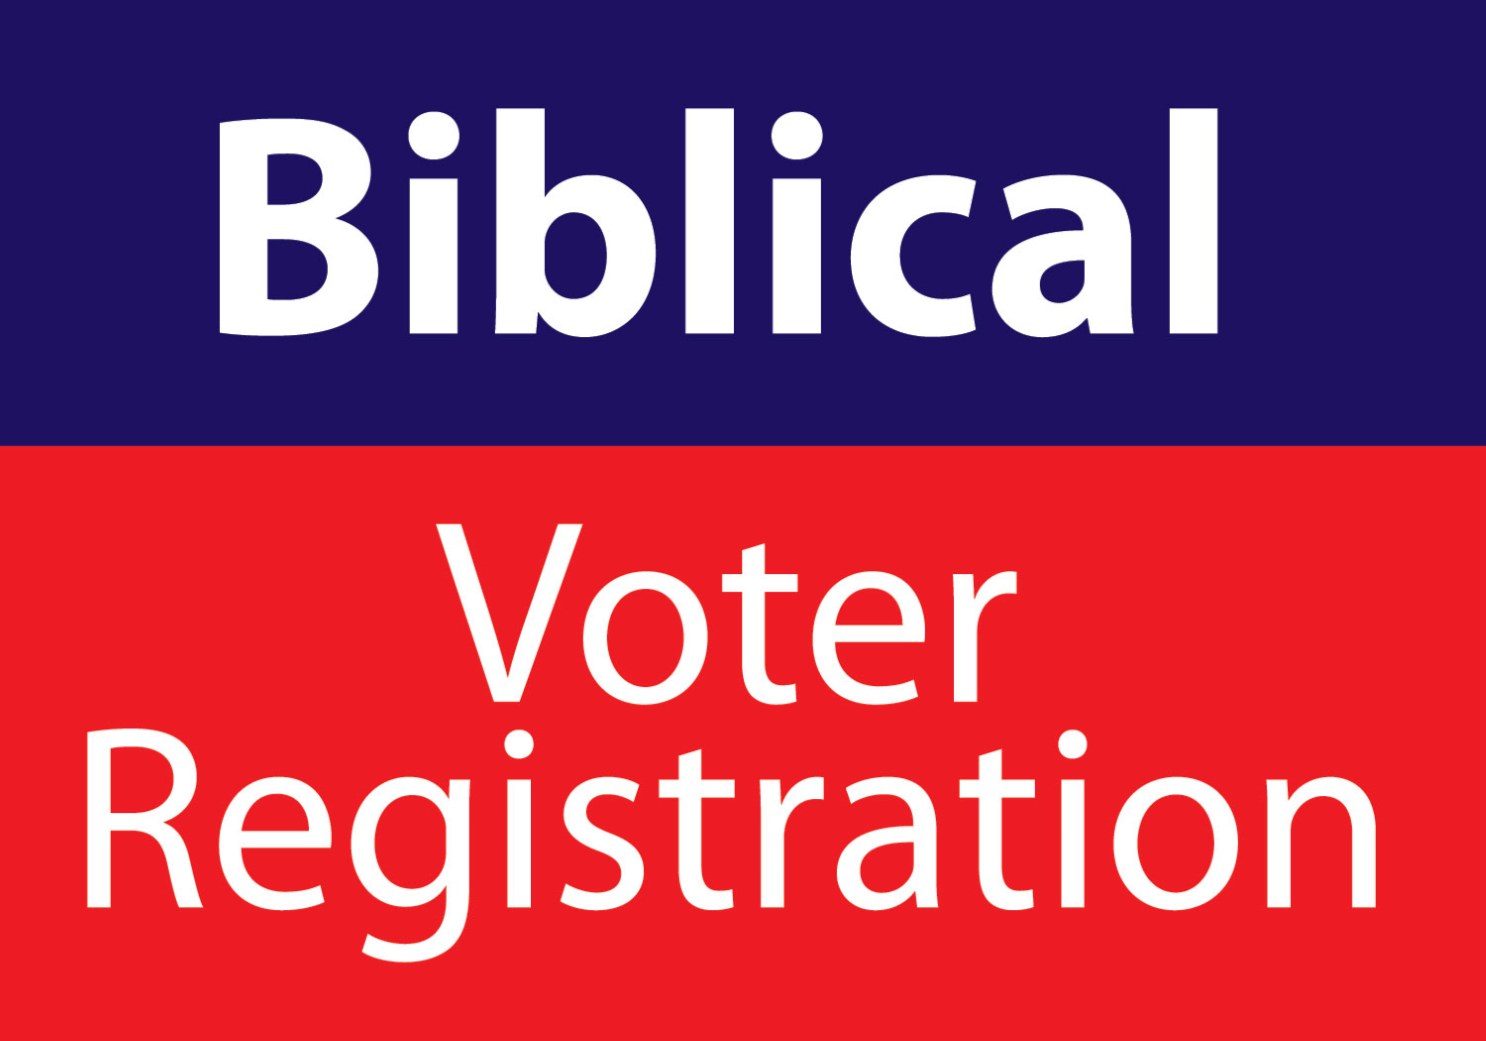 Biblical Voter Refgistration.png